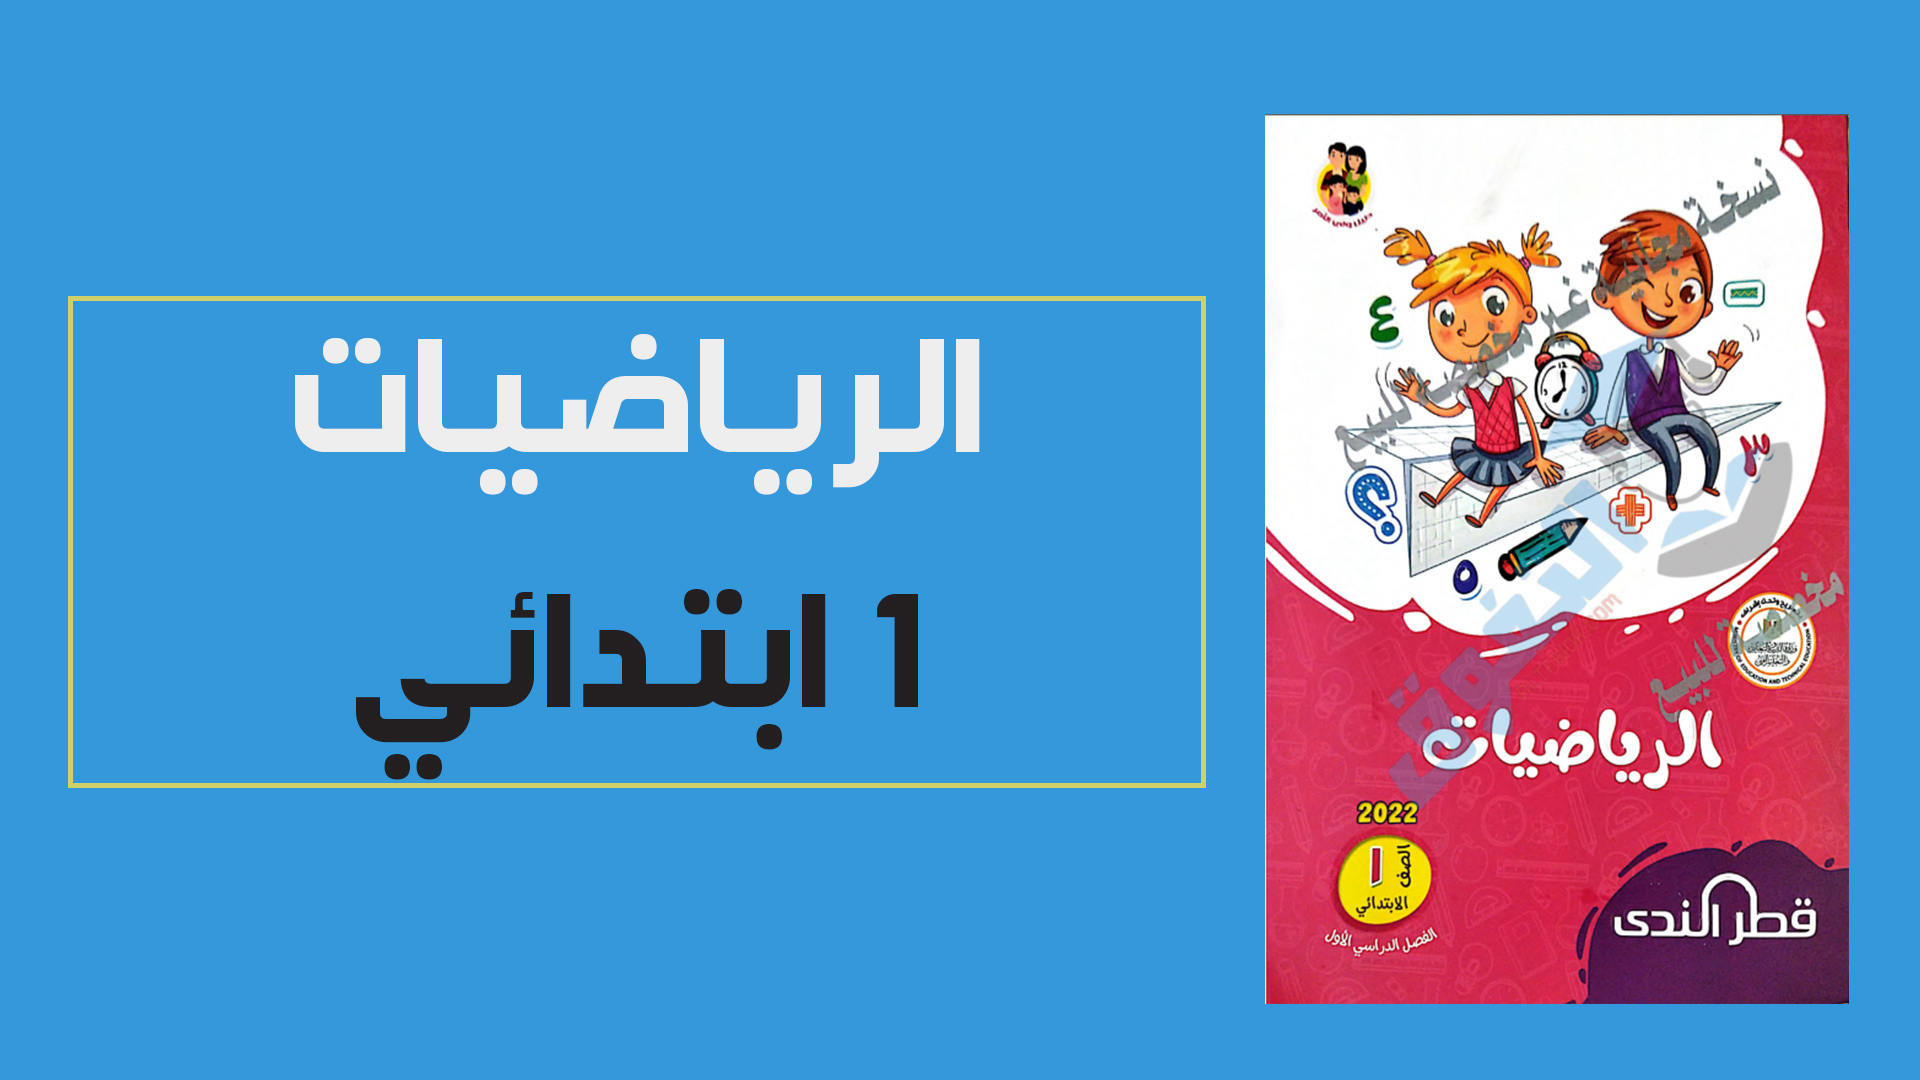 تحميل كتاب قطر الندى فى الرياضيات للصف الاول الابتدائي الترم الاول 2022 (النسخة الجديدة)